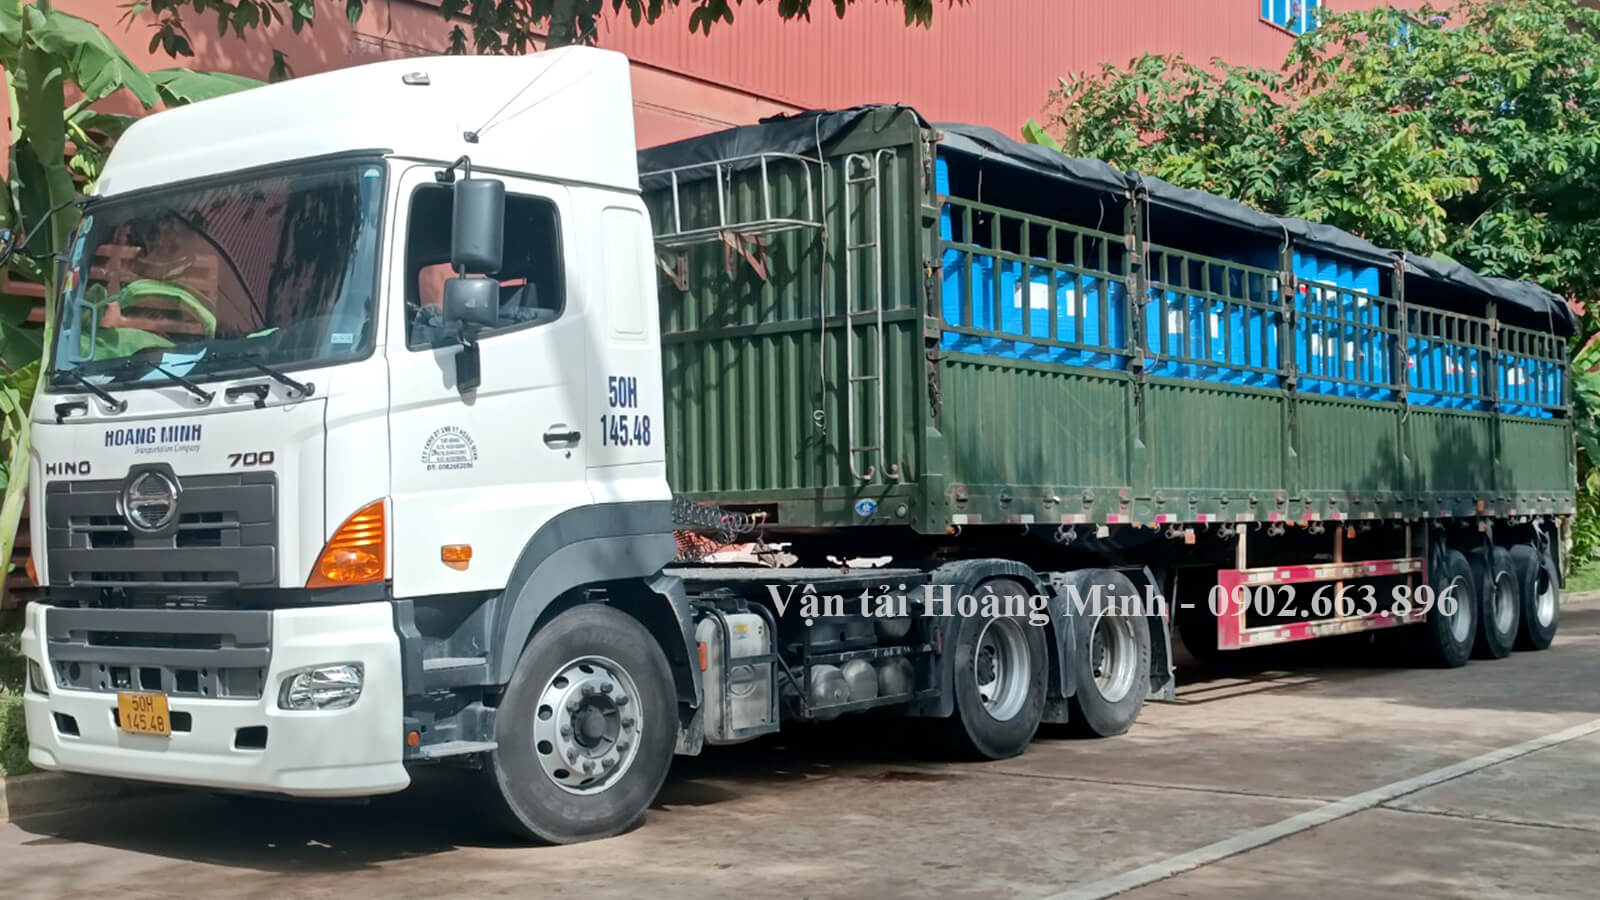 Hình ảnh xe đầu kéo container của Hoàng Minh đang chở dầu nhớt cho khách hàng tại Kiên Giang.jpg